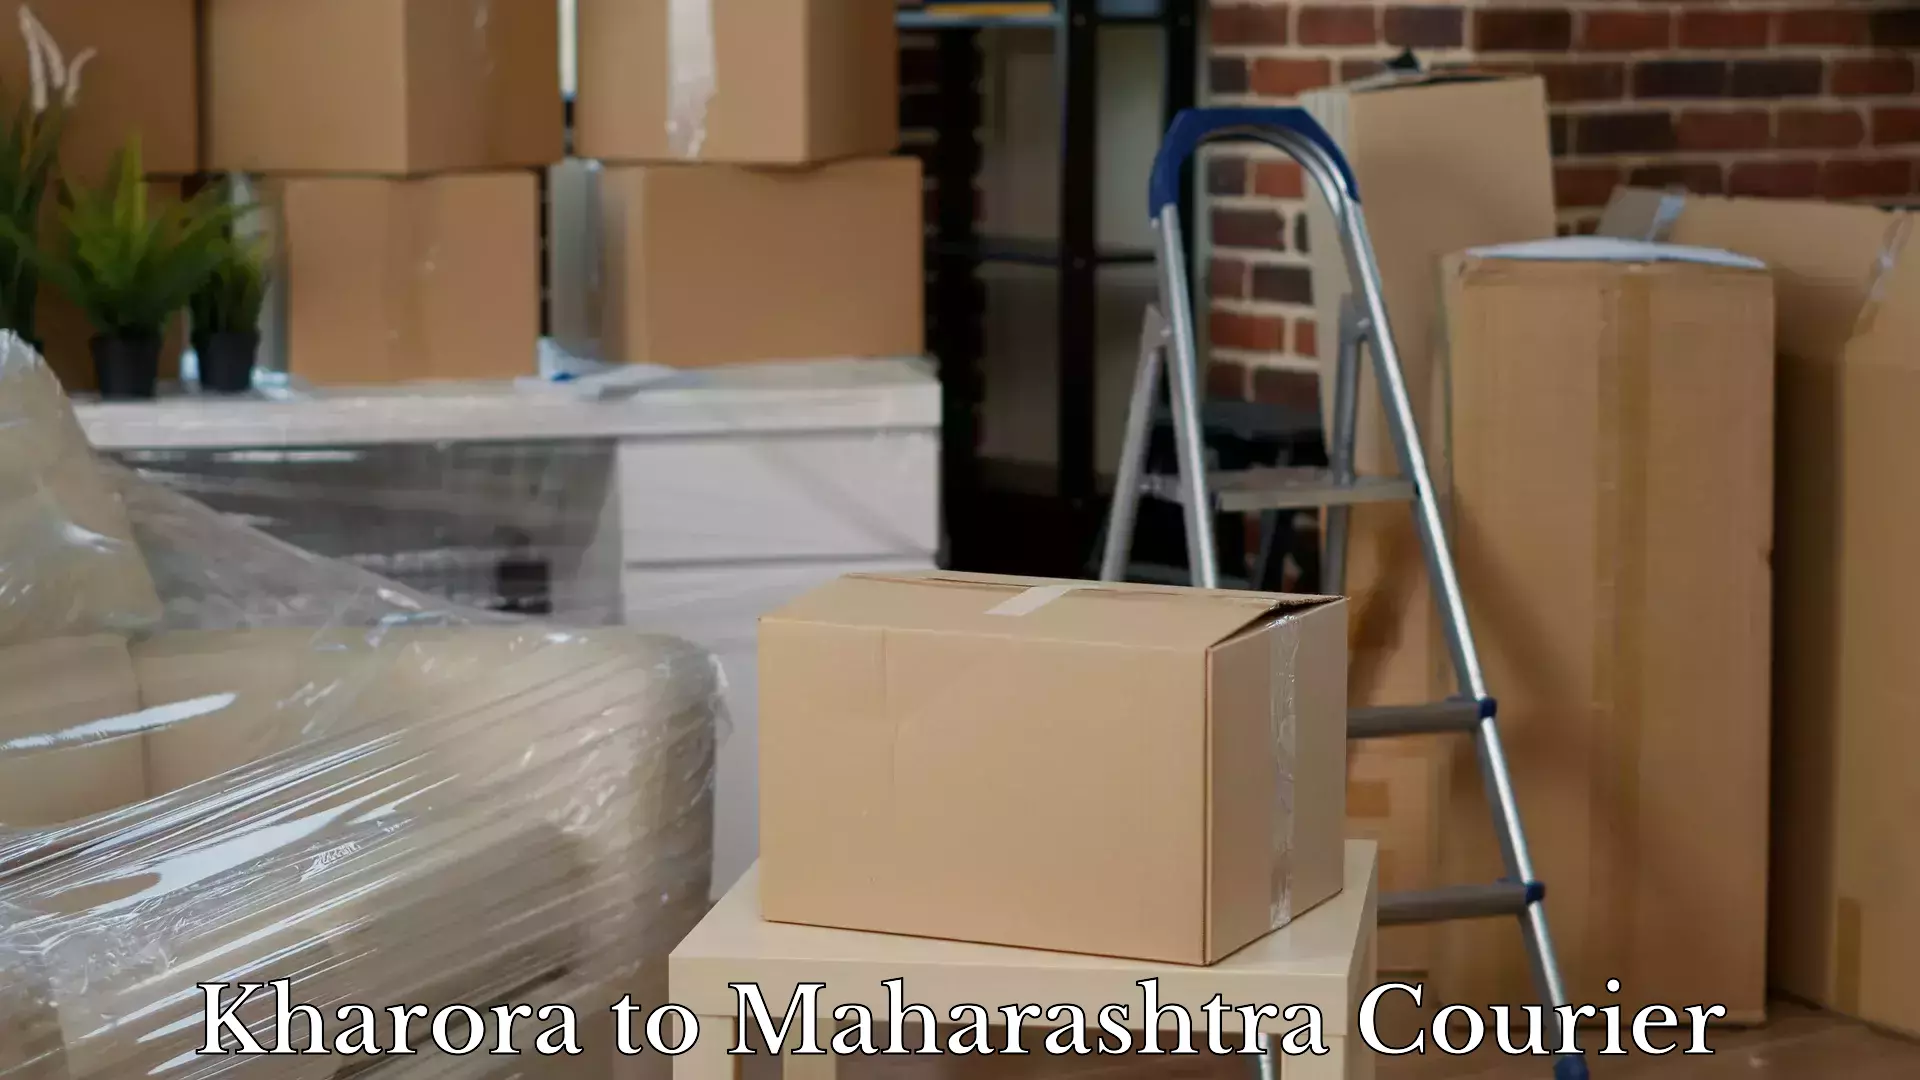 Baggage shipping advice in Kharora to Maharashtra